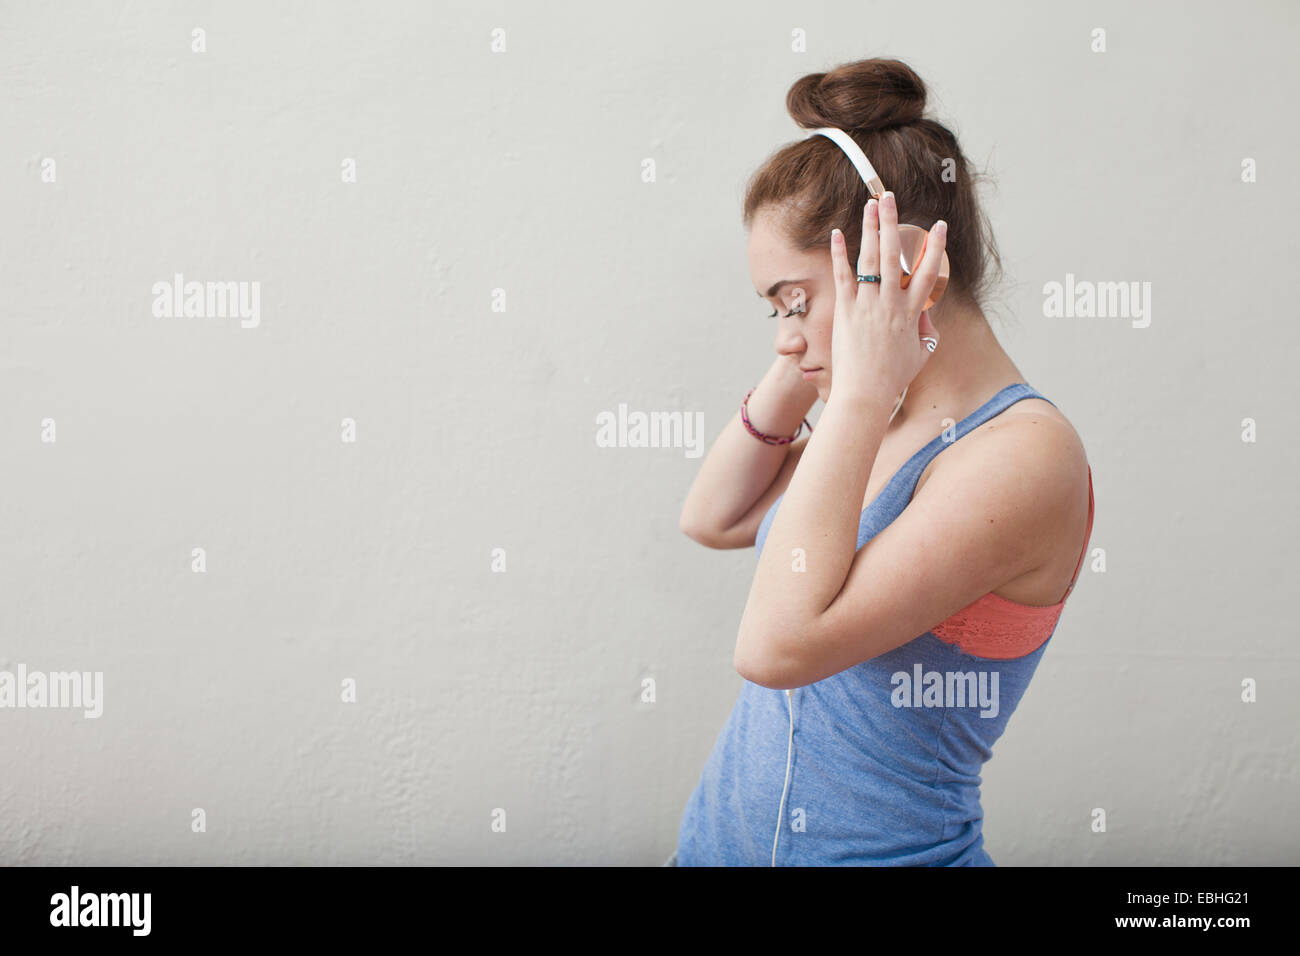 Adolescente escuchando música en auriculares en ballet school Foto de stock